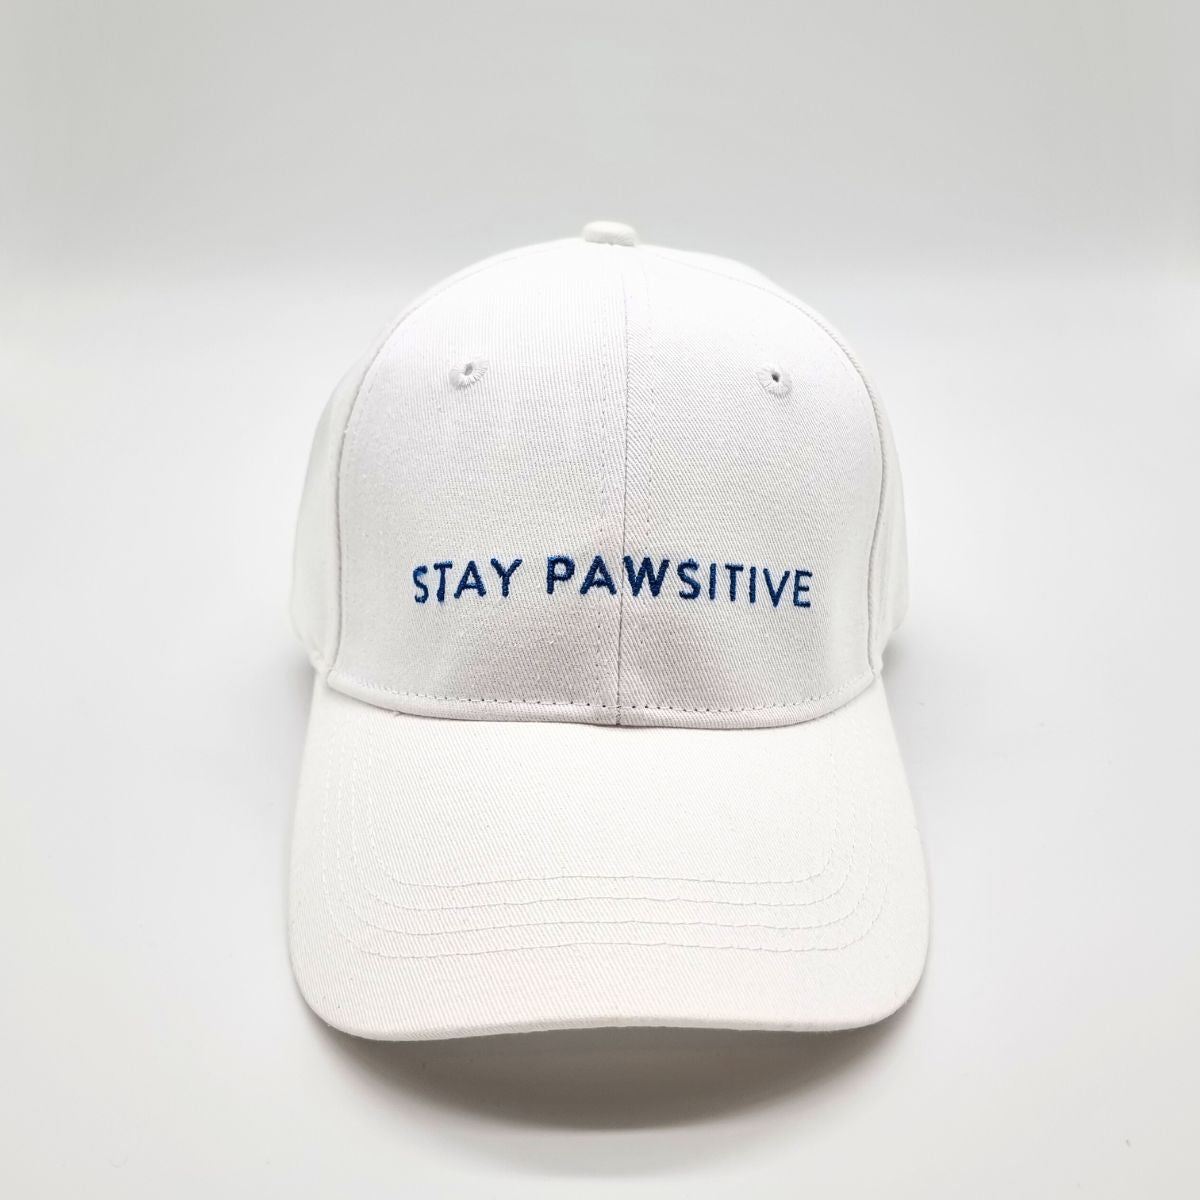 ホワイト・デニム・キャップ - Stay Pawsitive